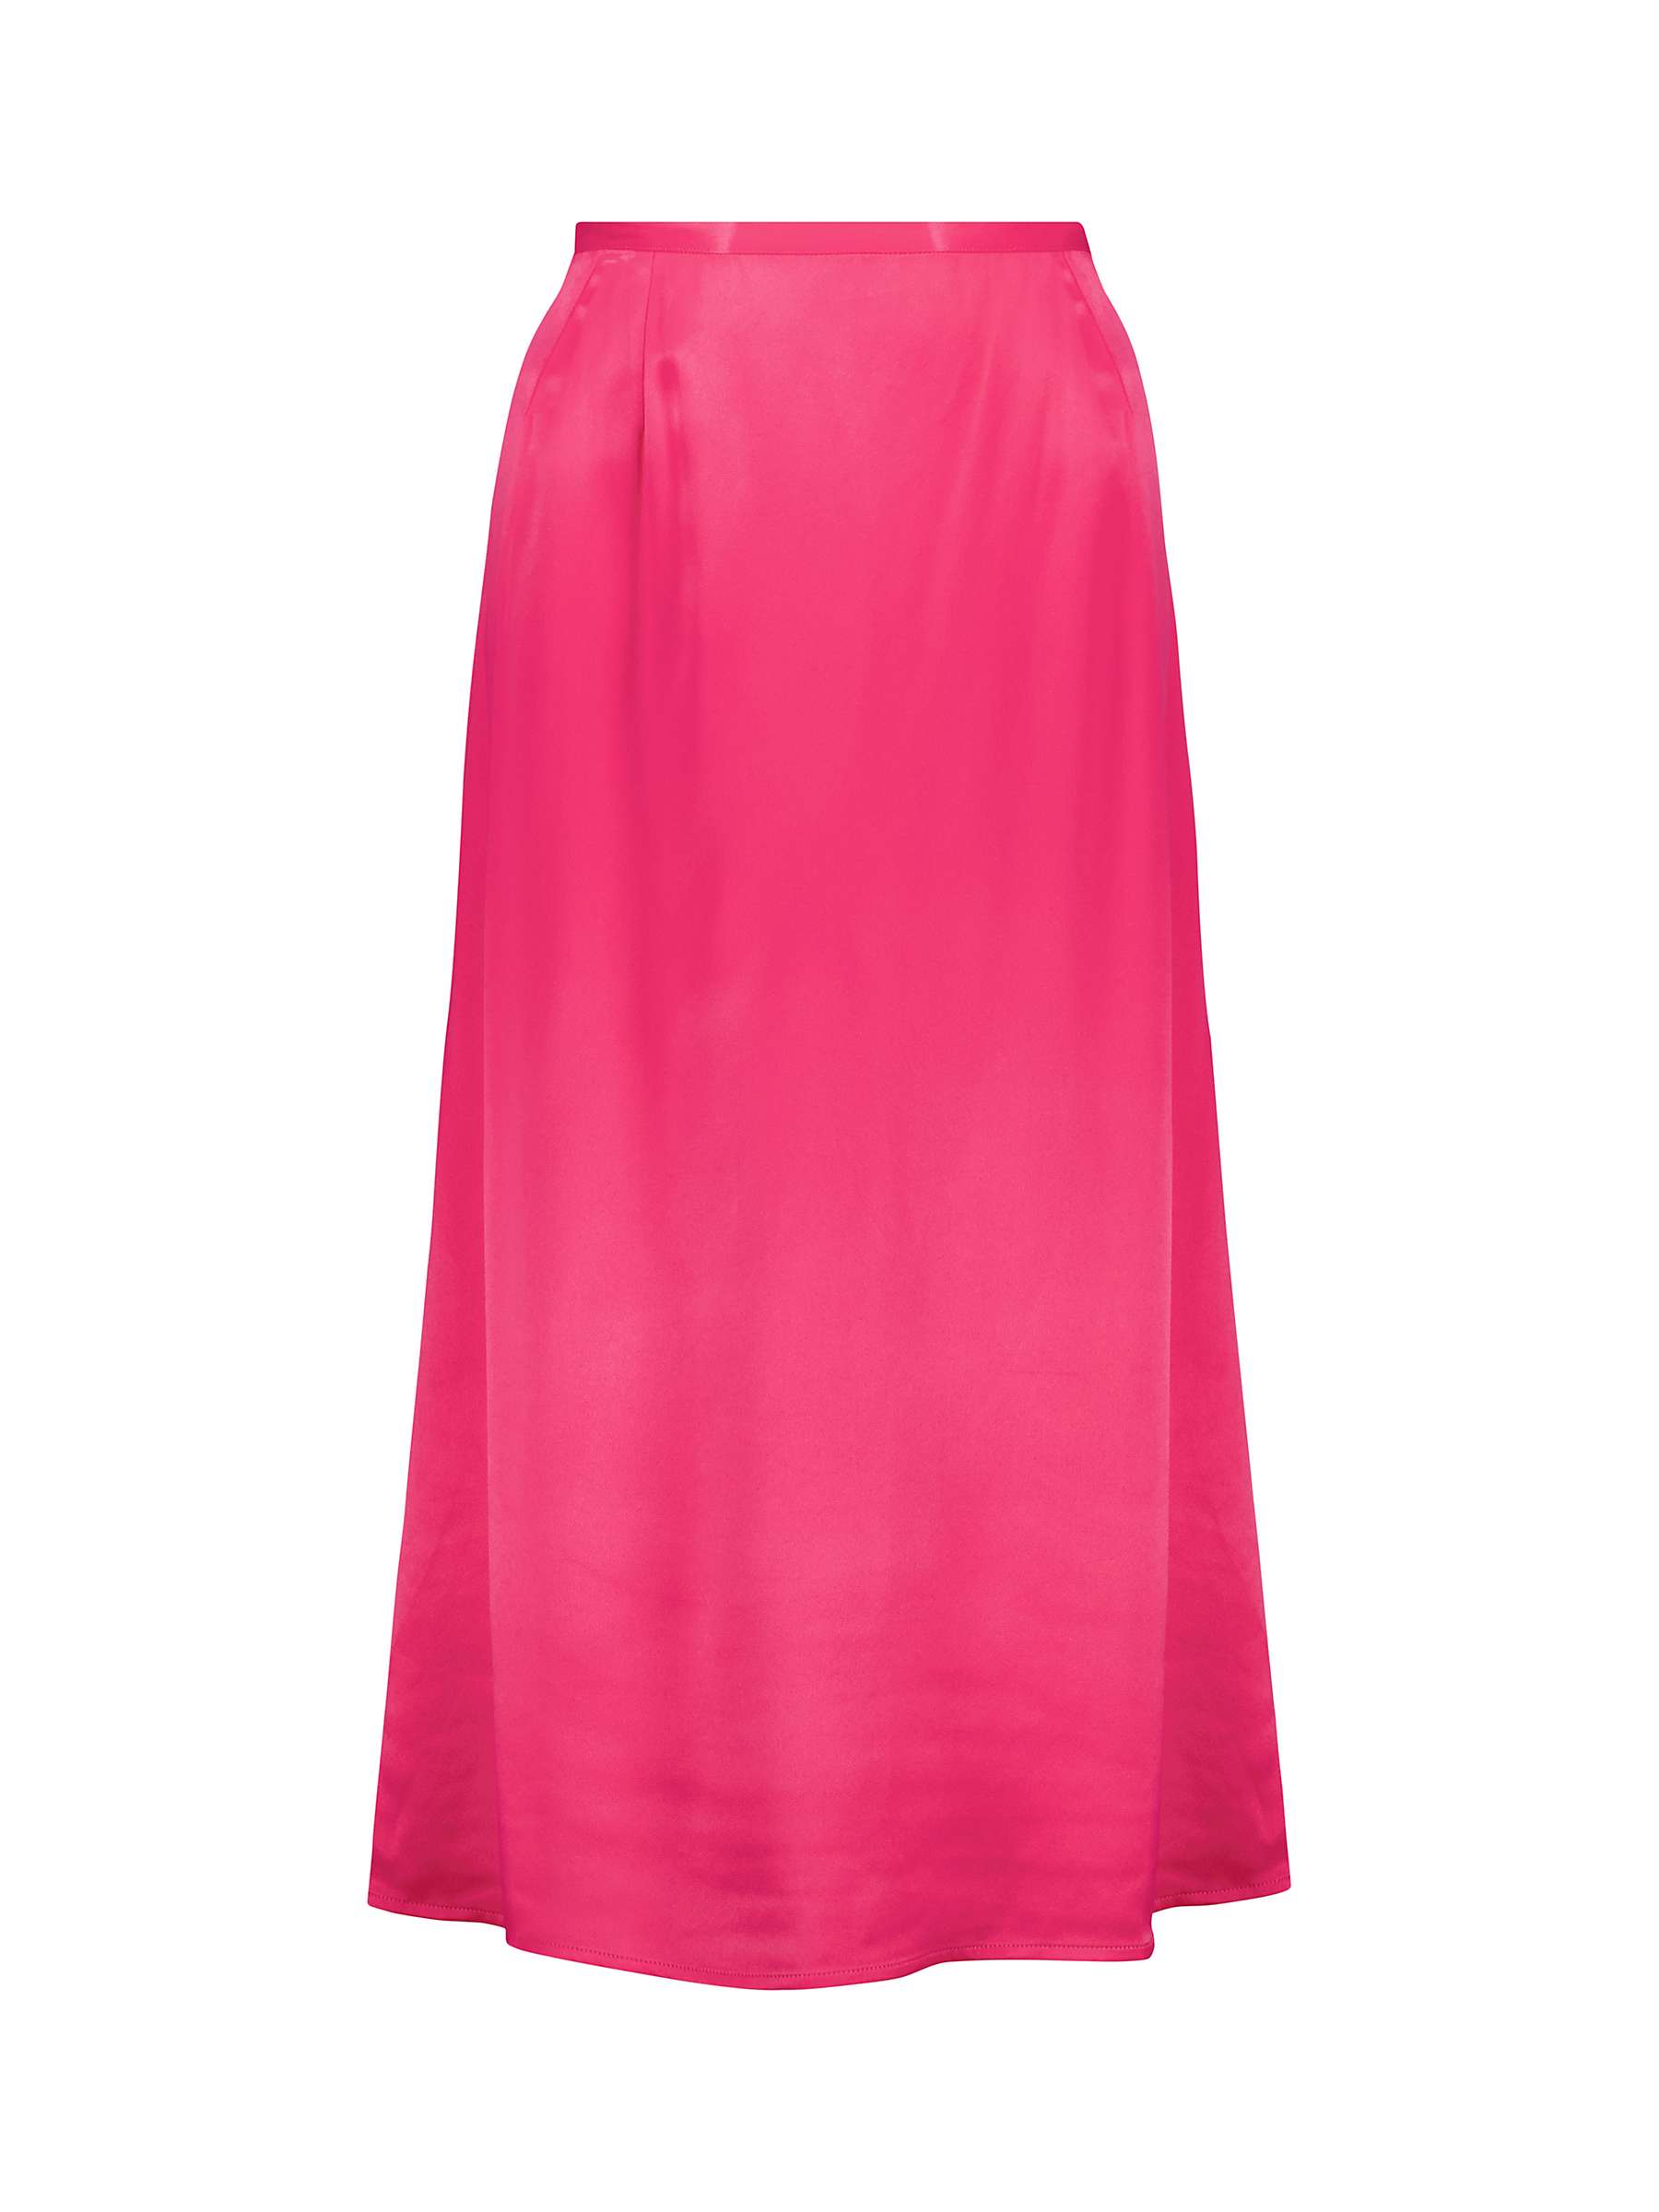 Buy Baukjen Lilianna Satin Slip Midi Skirt, Hyper Pink Online at johnlewis.com